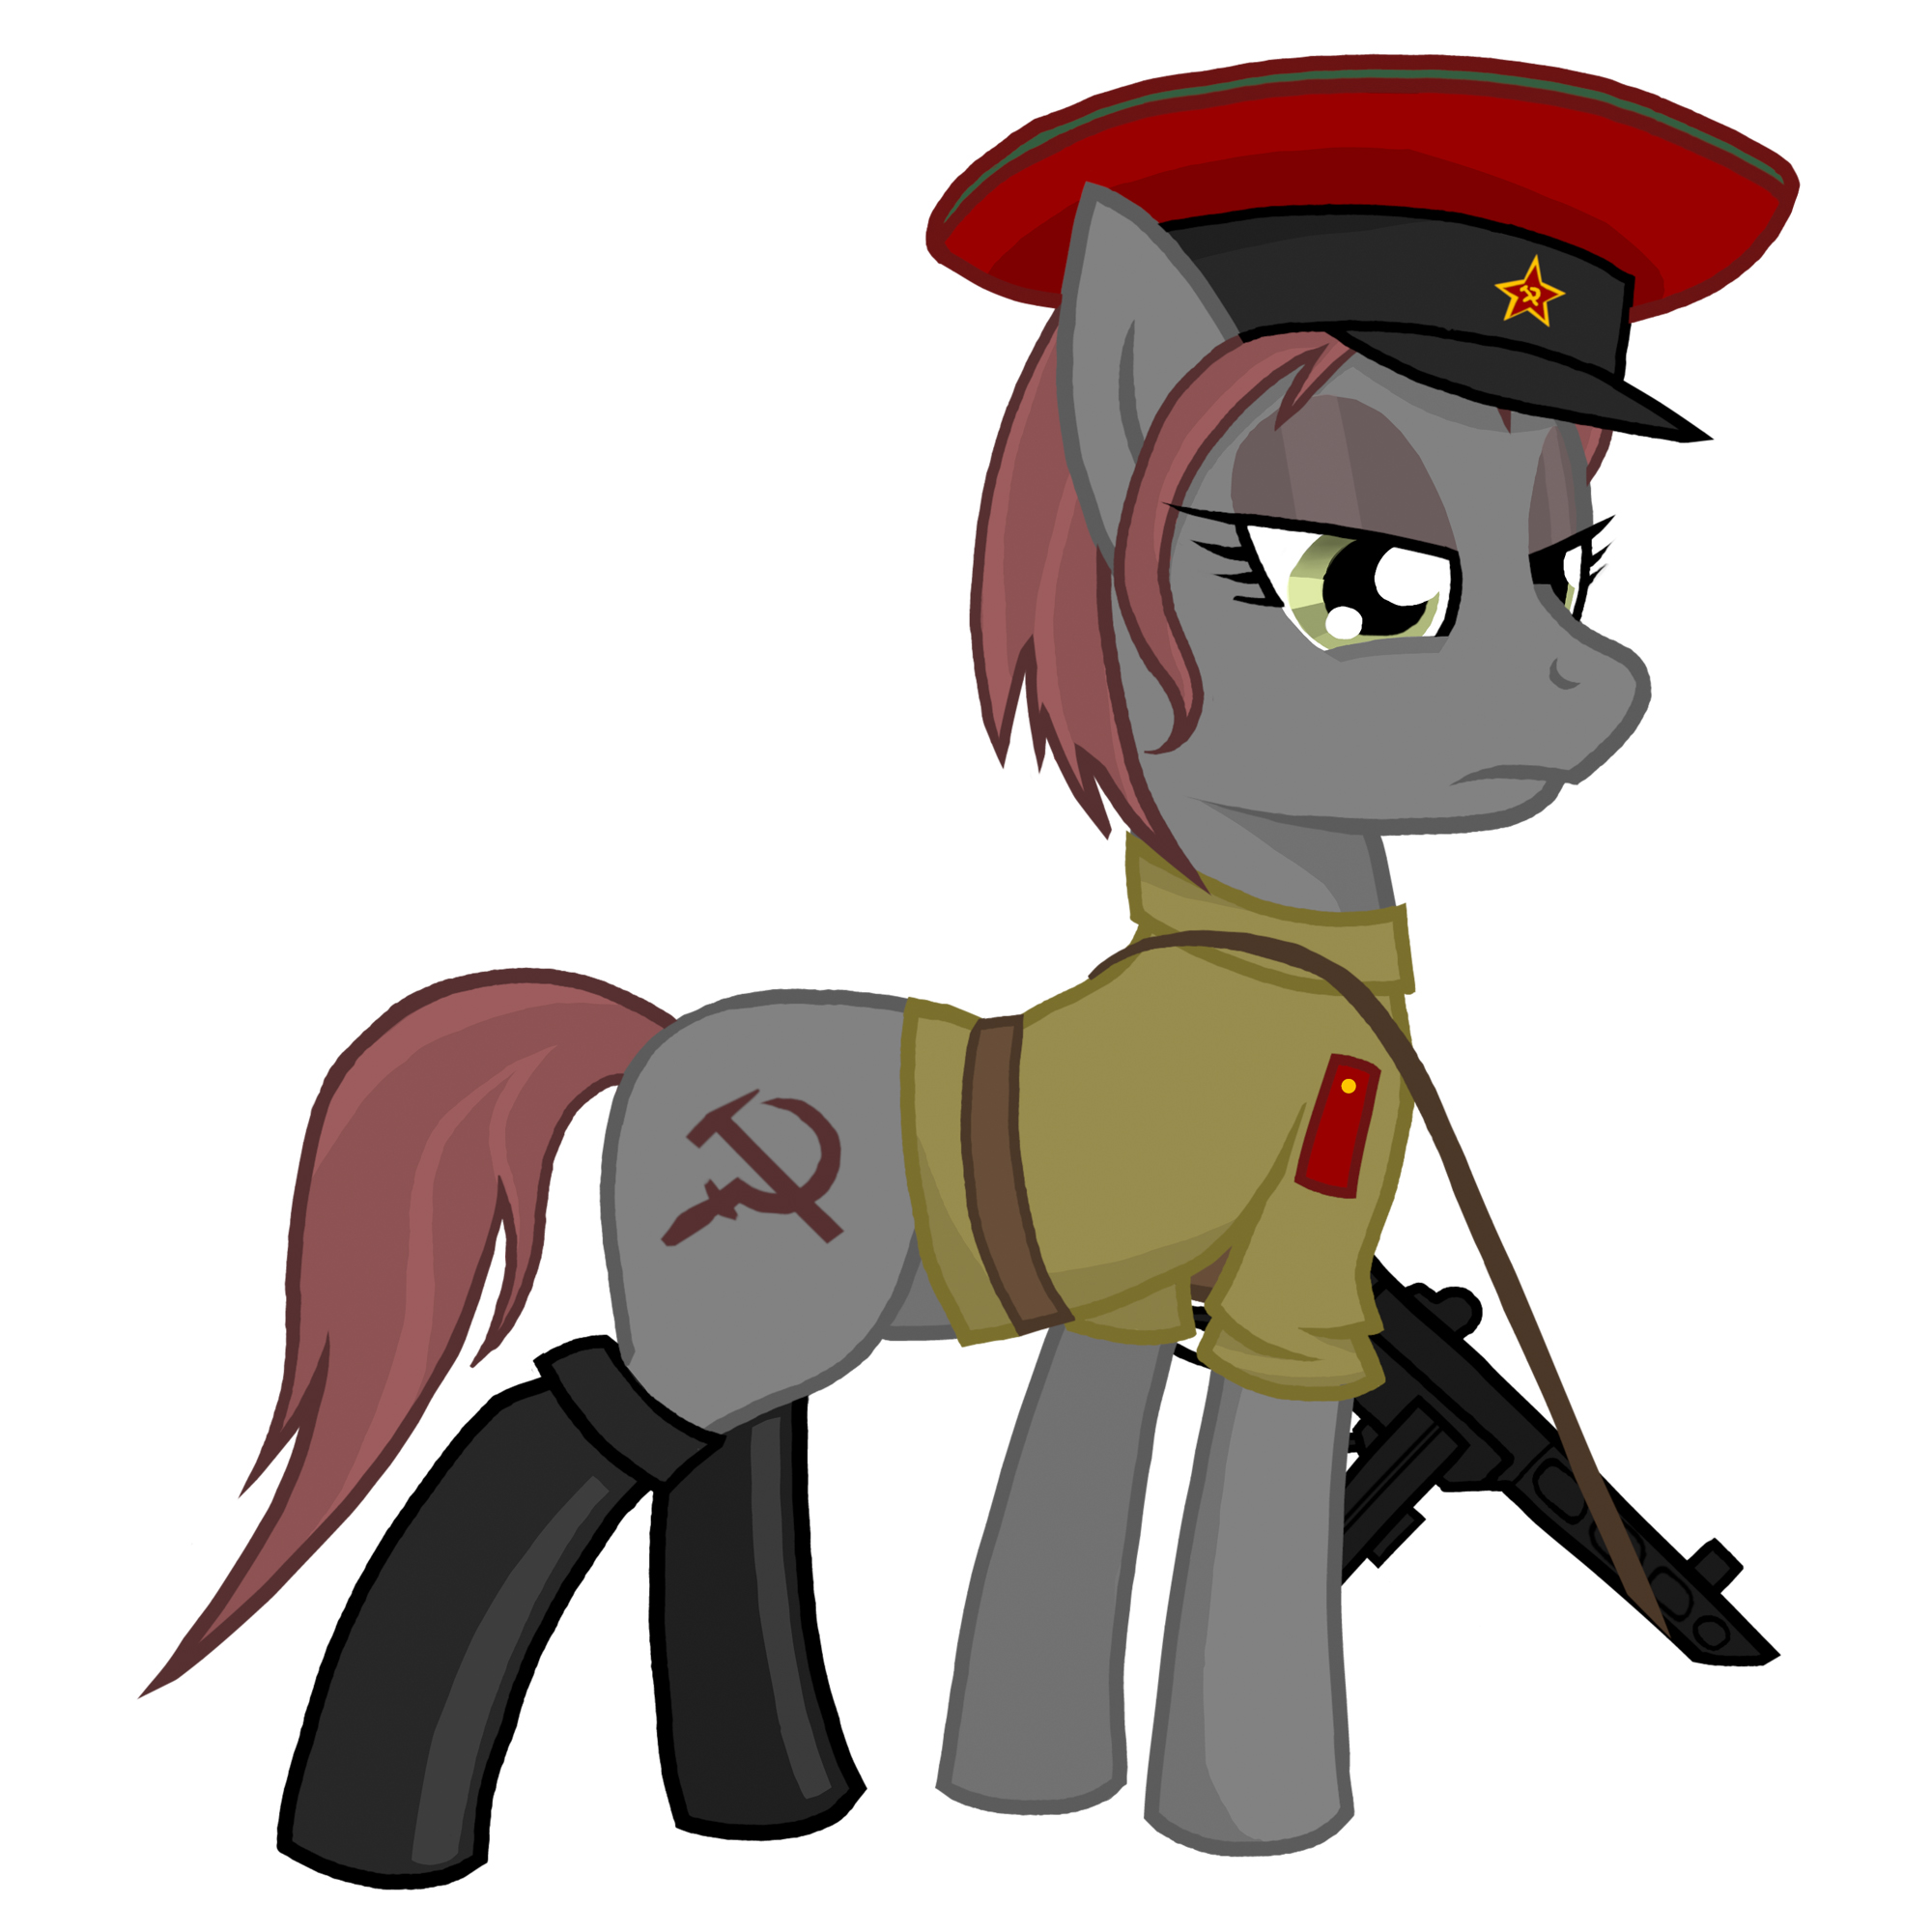 Russian pony